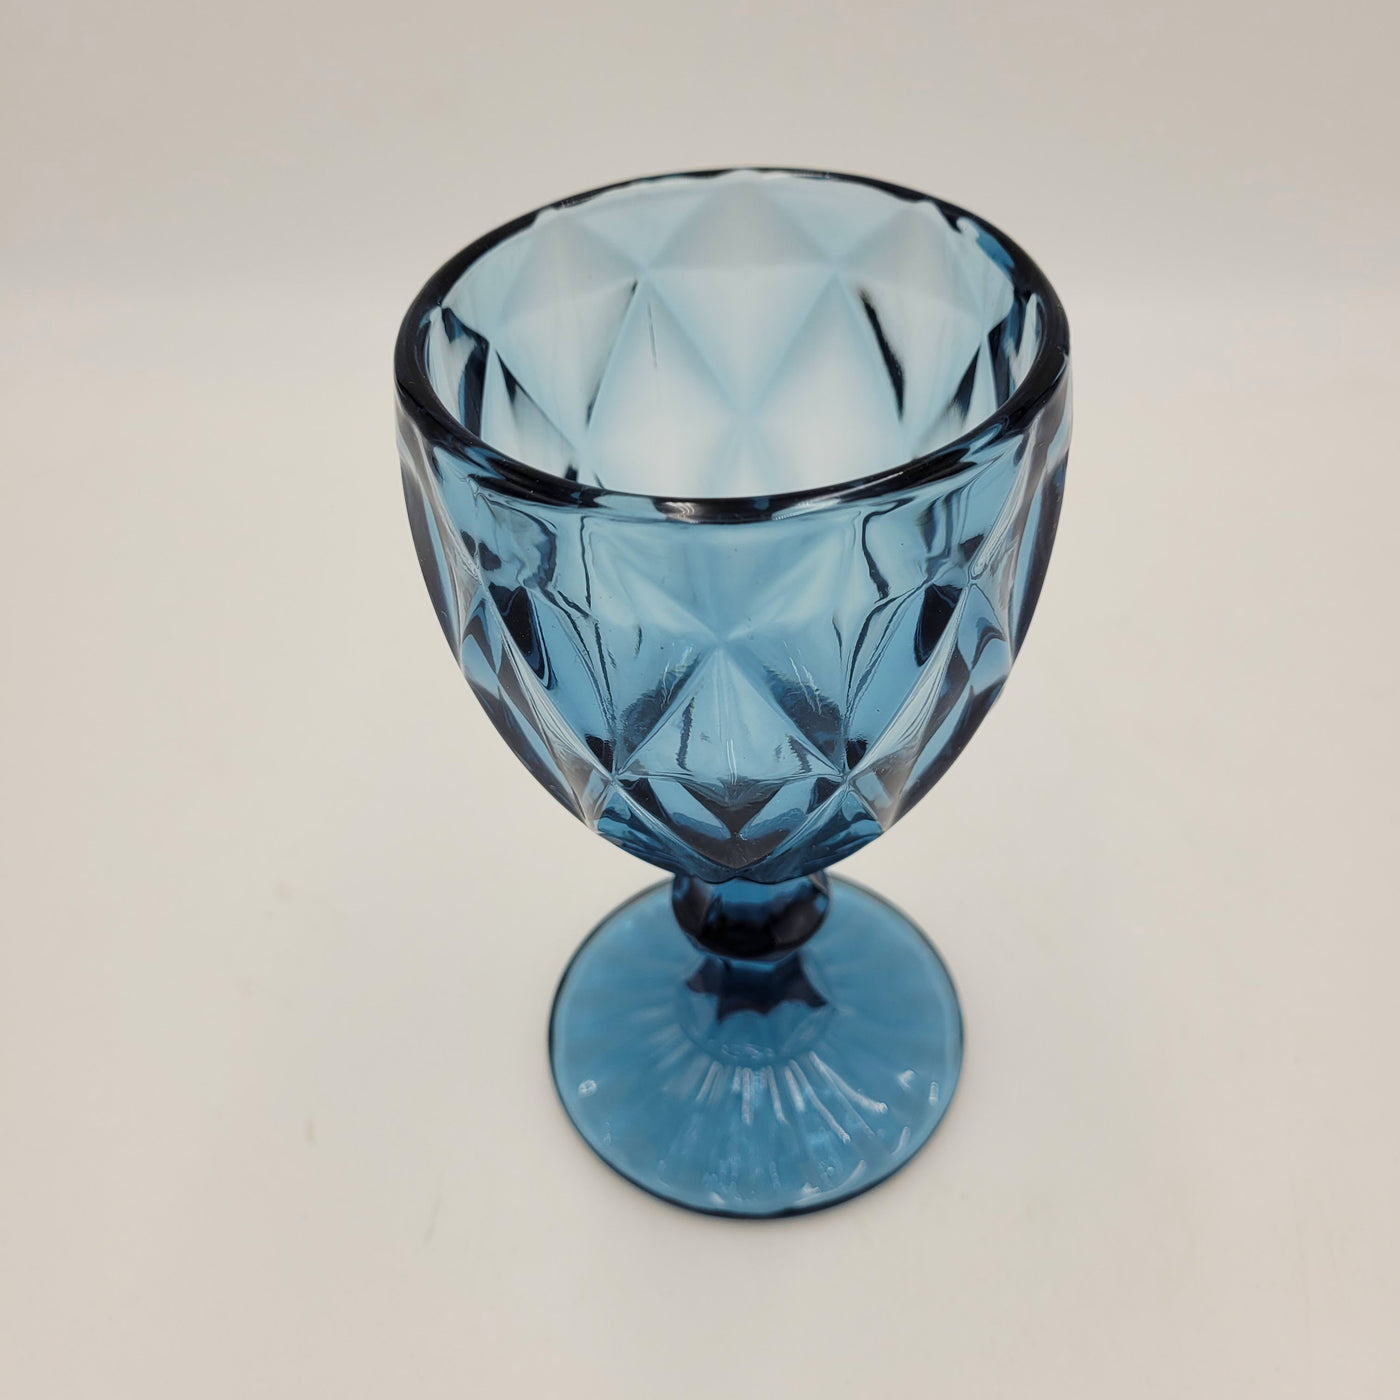 Menaje hogar Cristalería Vidrio y cristal Azul